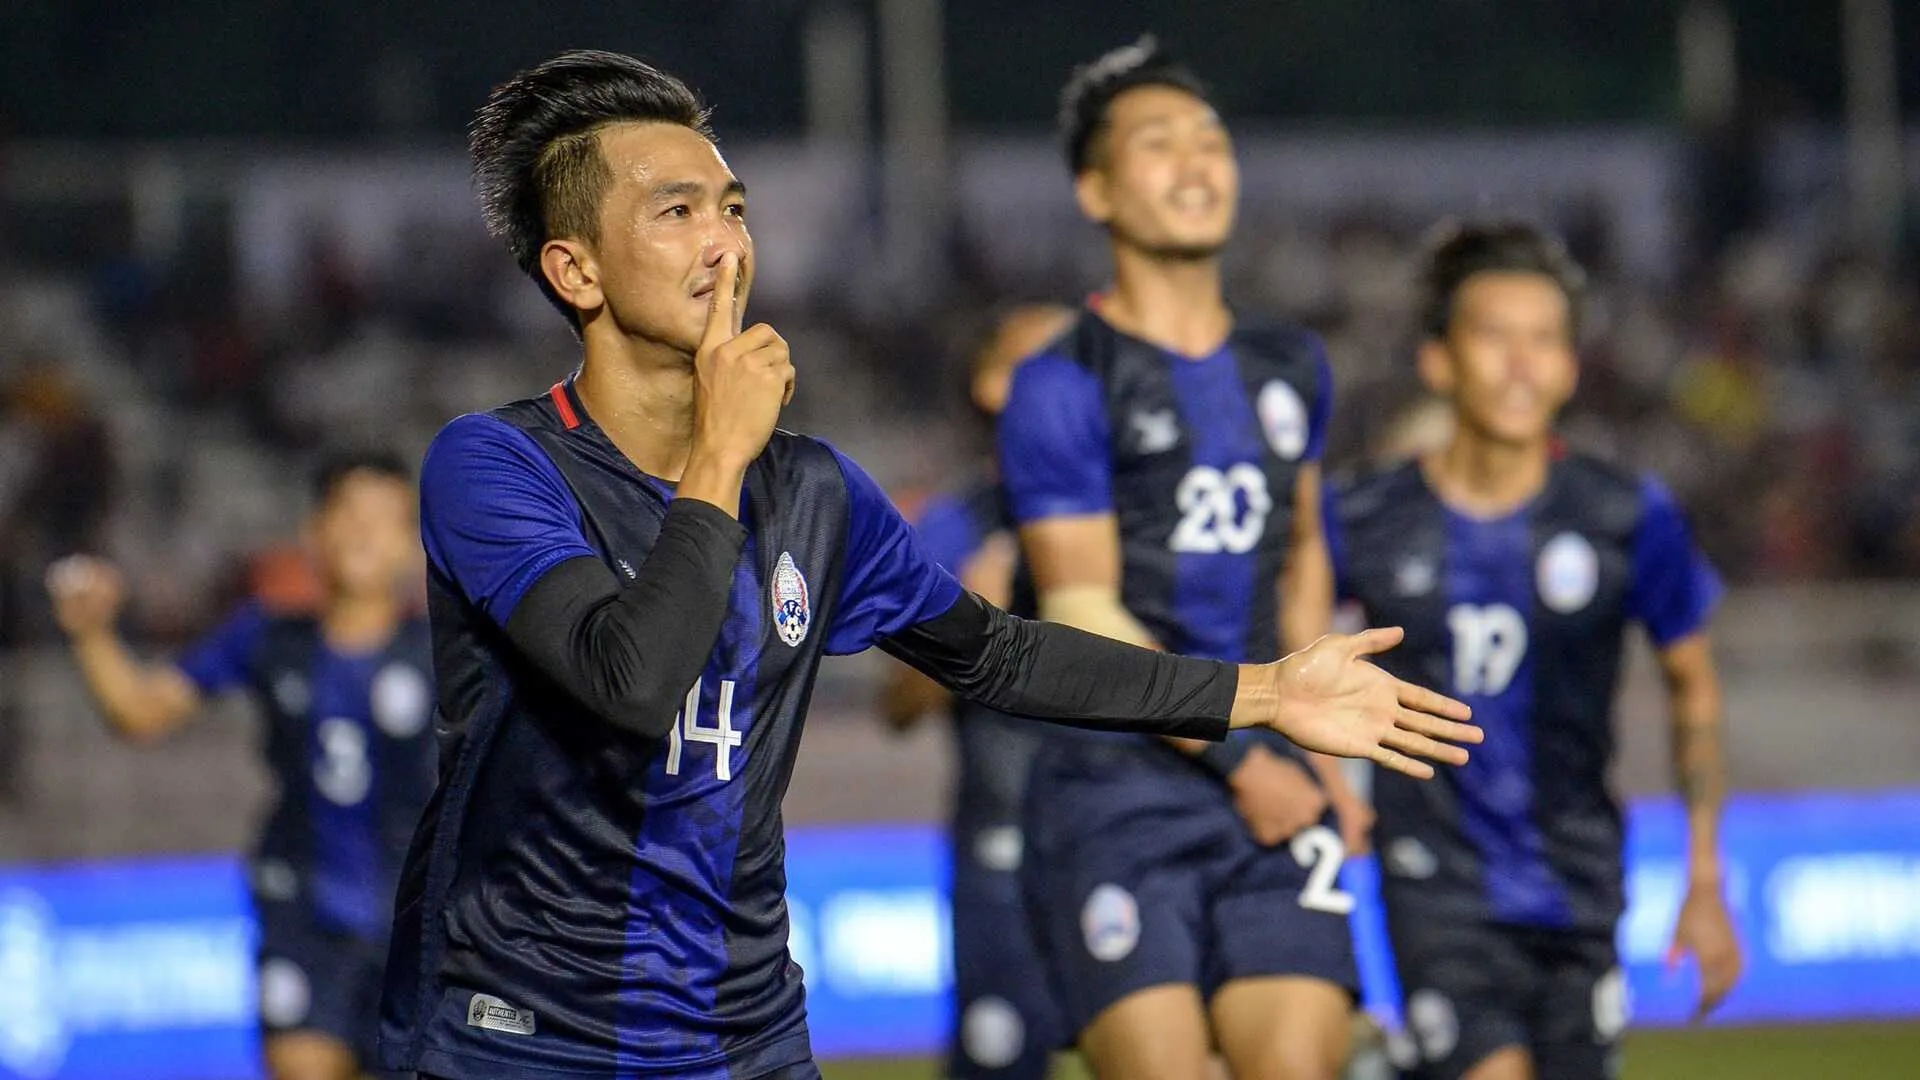 Campuchia vào vòng loại cuối Asian Cup 2023 - Nhật Bản chấm dứt kỷ lục của Australia